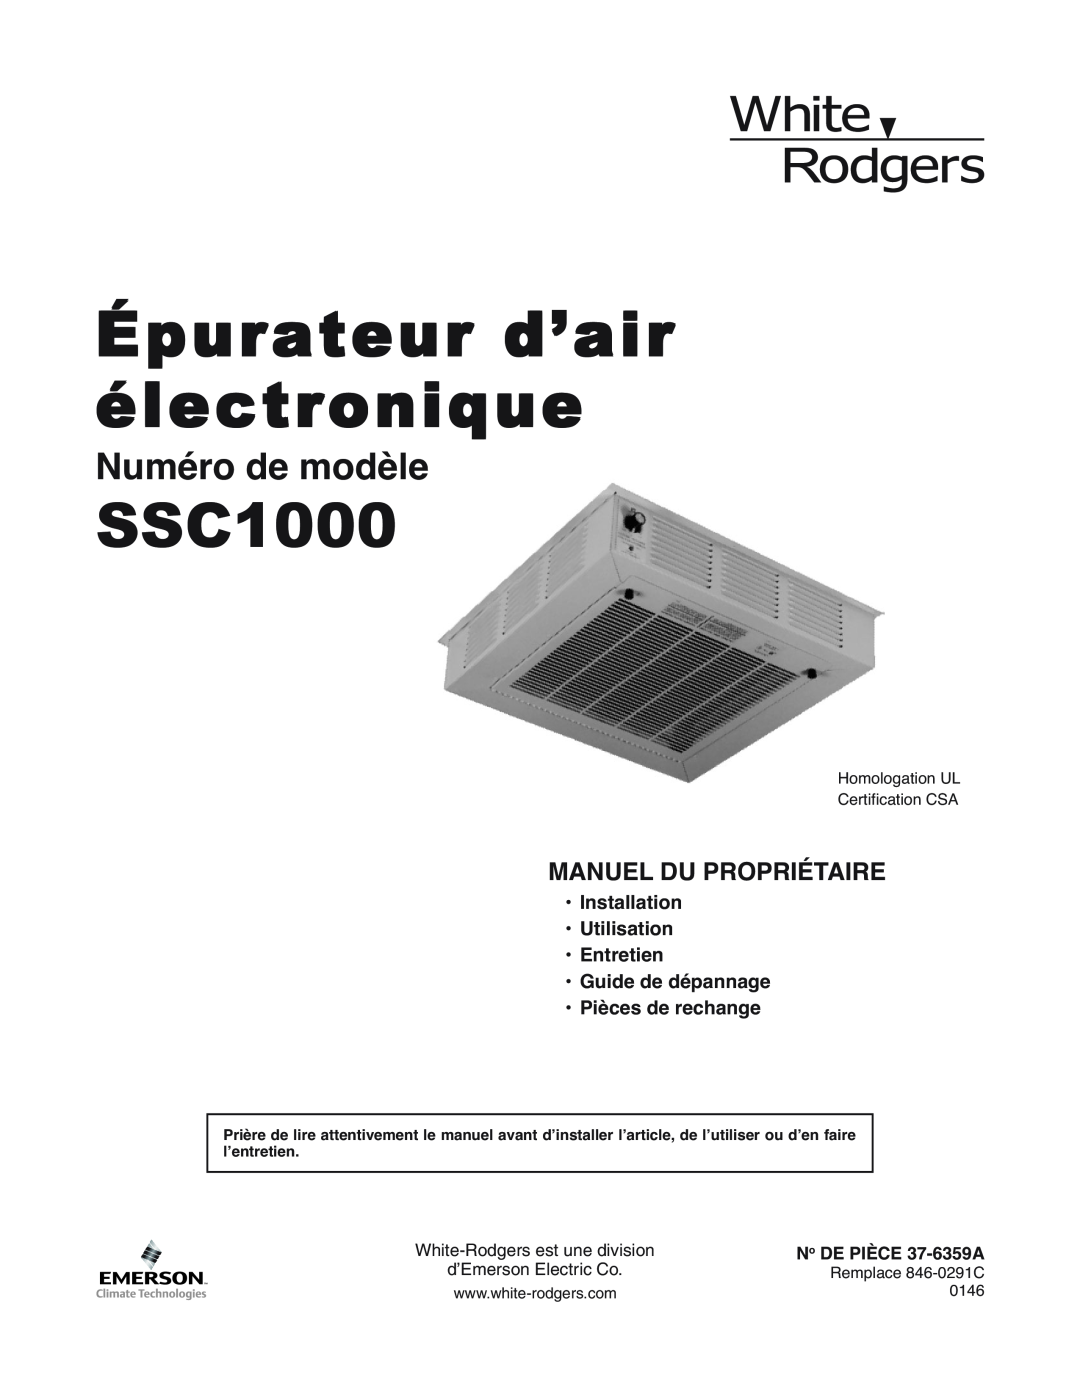 White Rodgers SSC1000 Manuel Du Propriétaire, Installation Utilisation Entretien, Guide de dépannage Pièces de rechange 